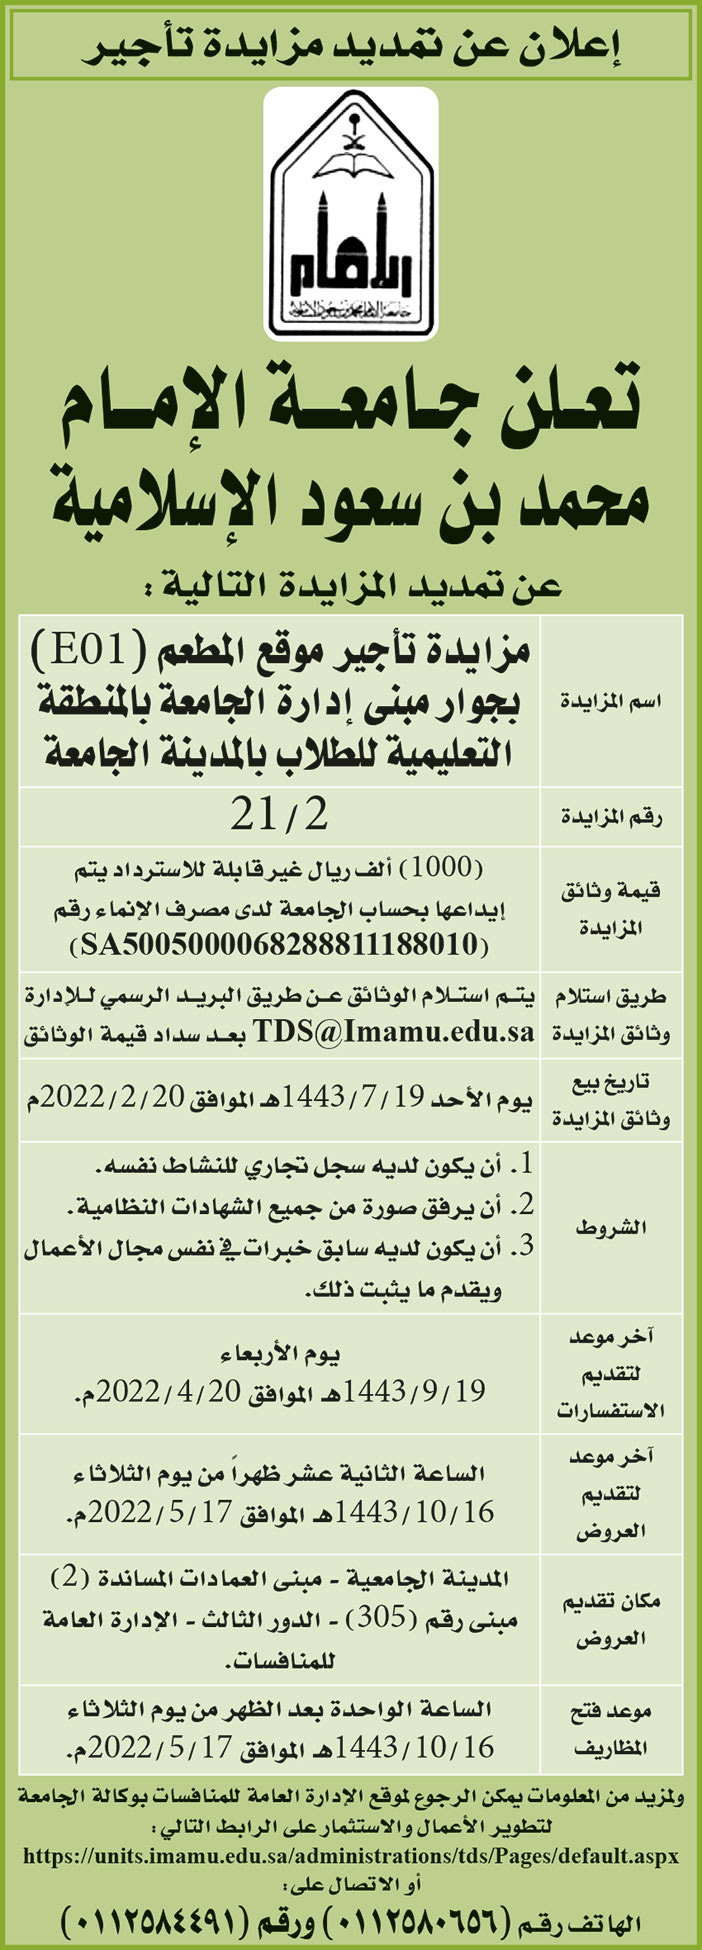 جامعة الإمام محمد بن سعود الإسلامية تمدد مزايدة تأجير موقع المطعم (E01) بجوار مبنى إدارة الجامعة بالمنطقة التعليمية للطلاب بالمدينة 